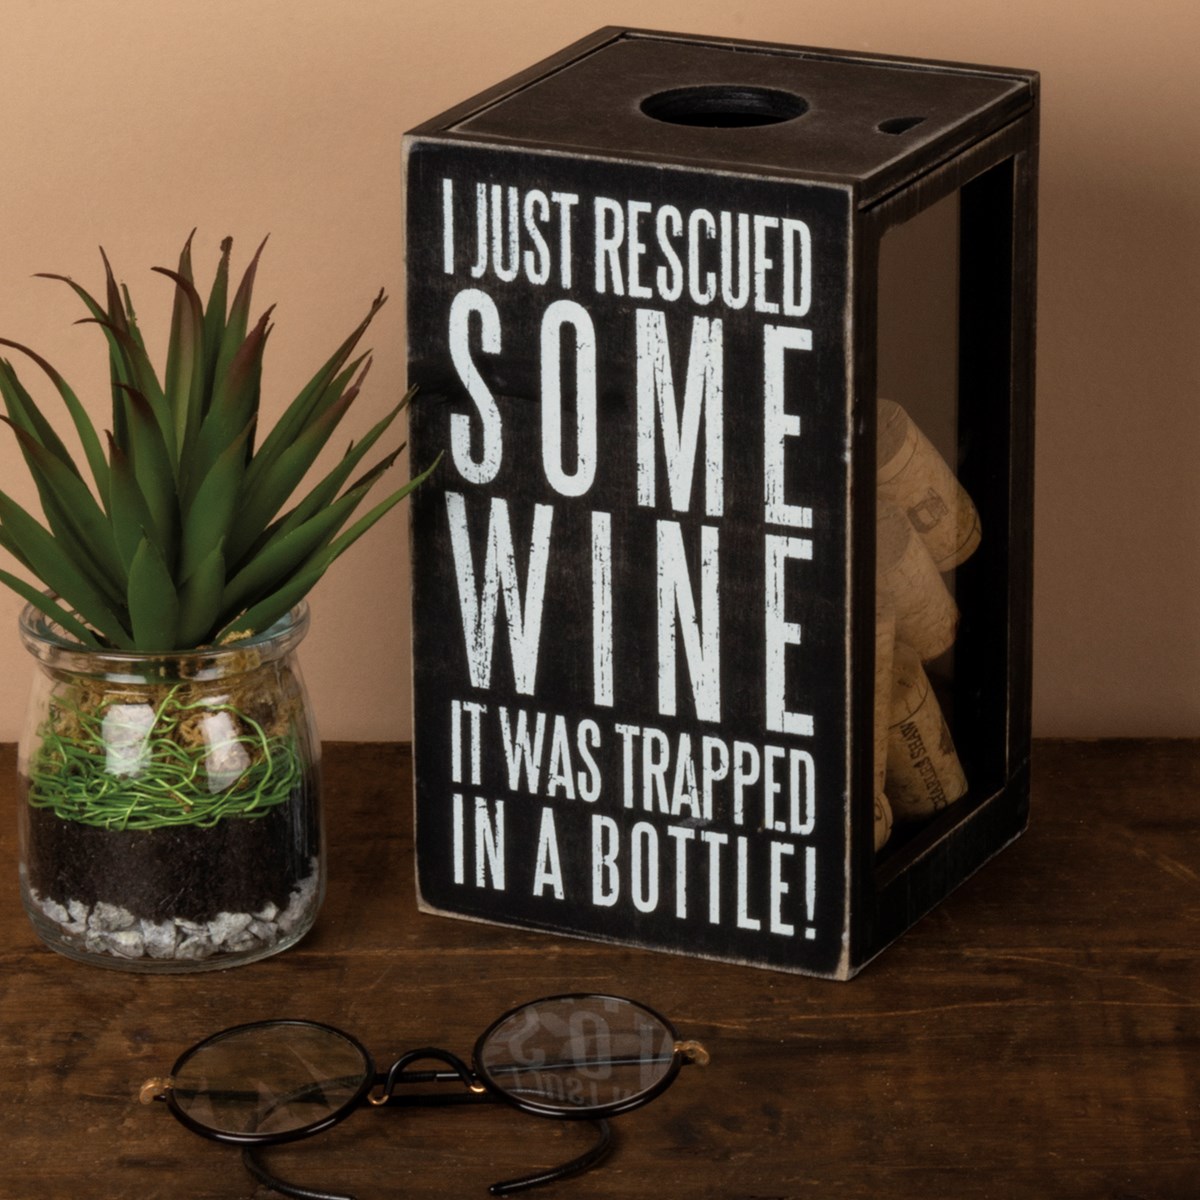 Bottle Of Really Good Wine Cork Holder - Wood, Glass